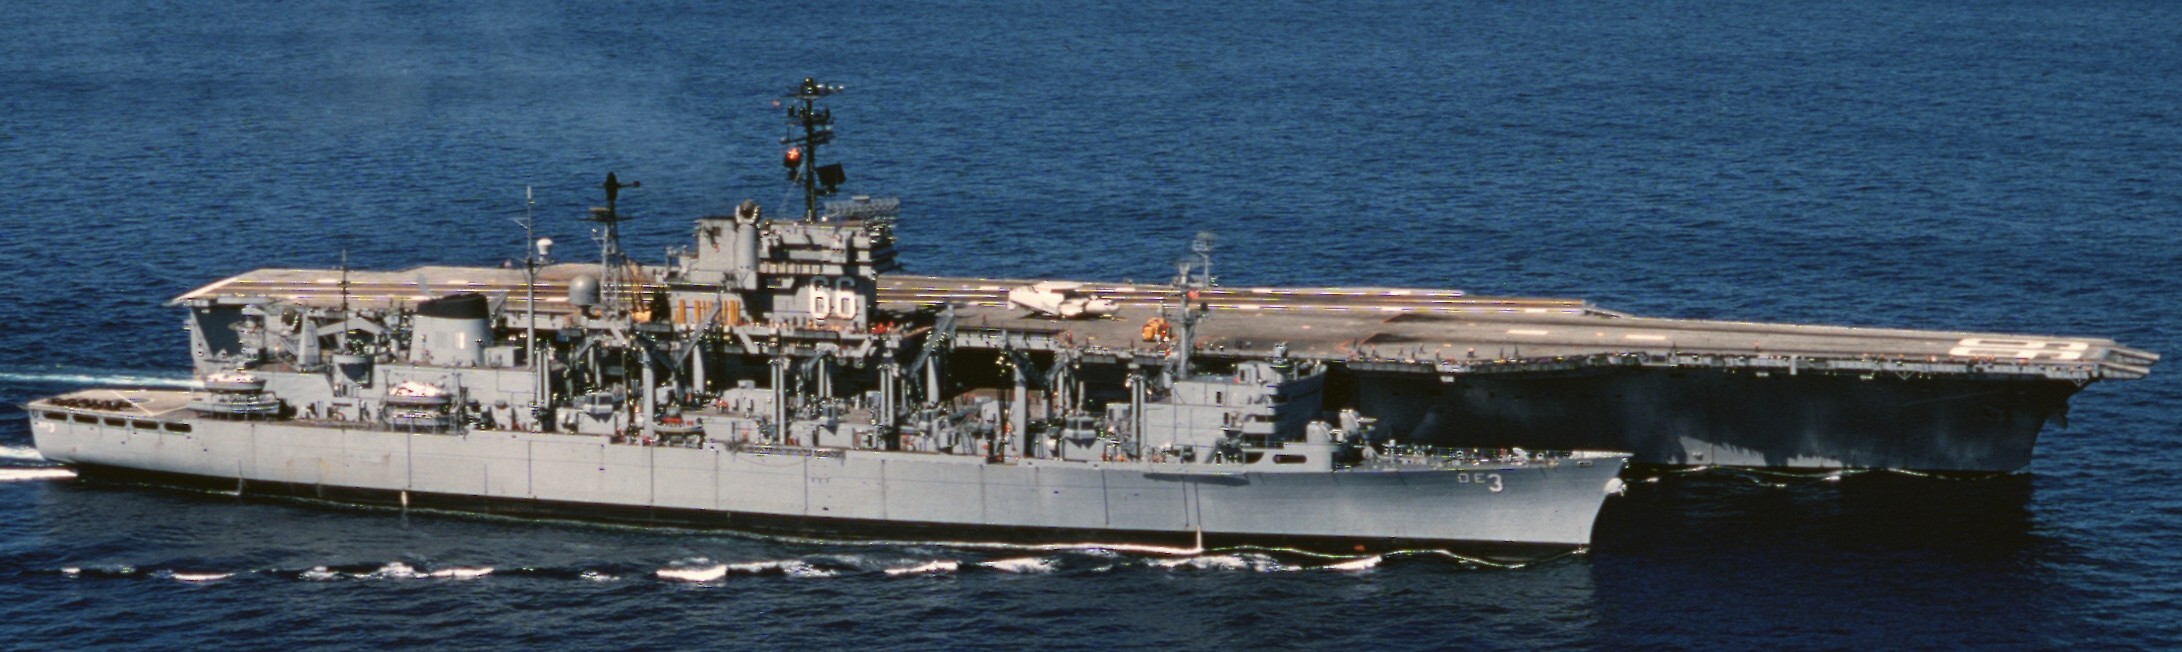 cv-66 uss america kitty hawk class aircraft carrier us navy 21